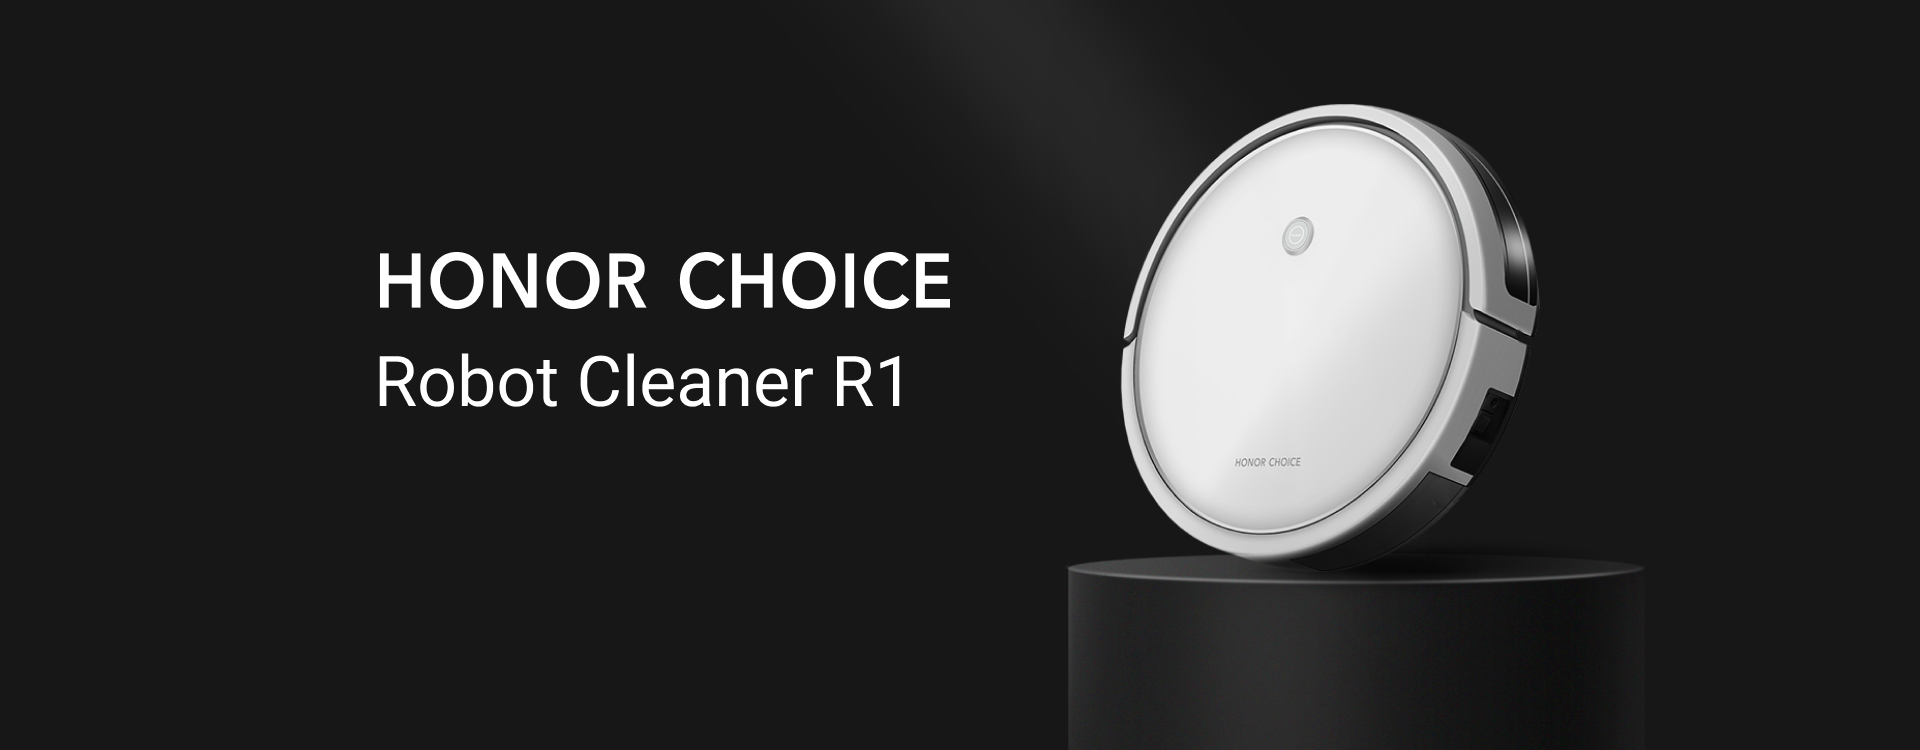 Honor choice watch white. Робот пылесос хонор choice. Робот-пылесос Honor choice Robot Cleaner r1. Робот пылесос хонор r1. Honor choice Cleaner r1.